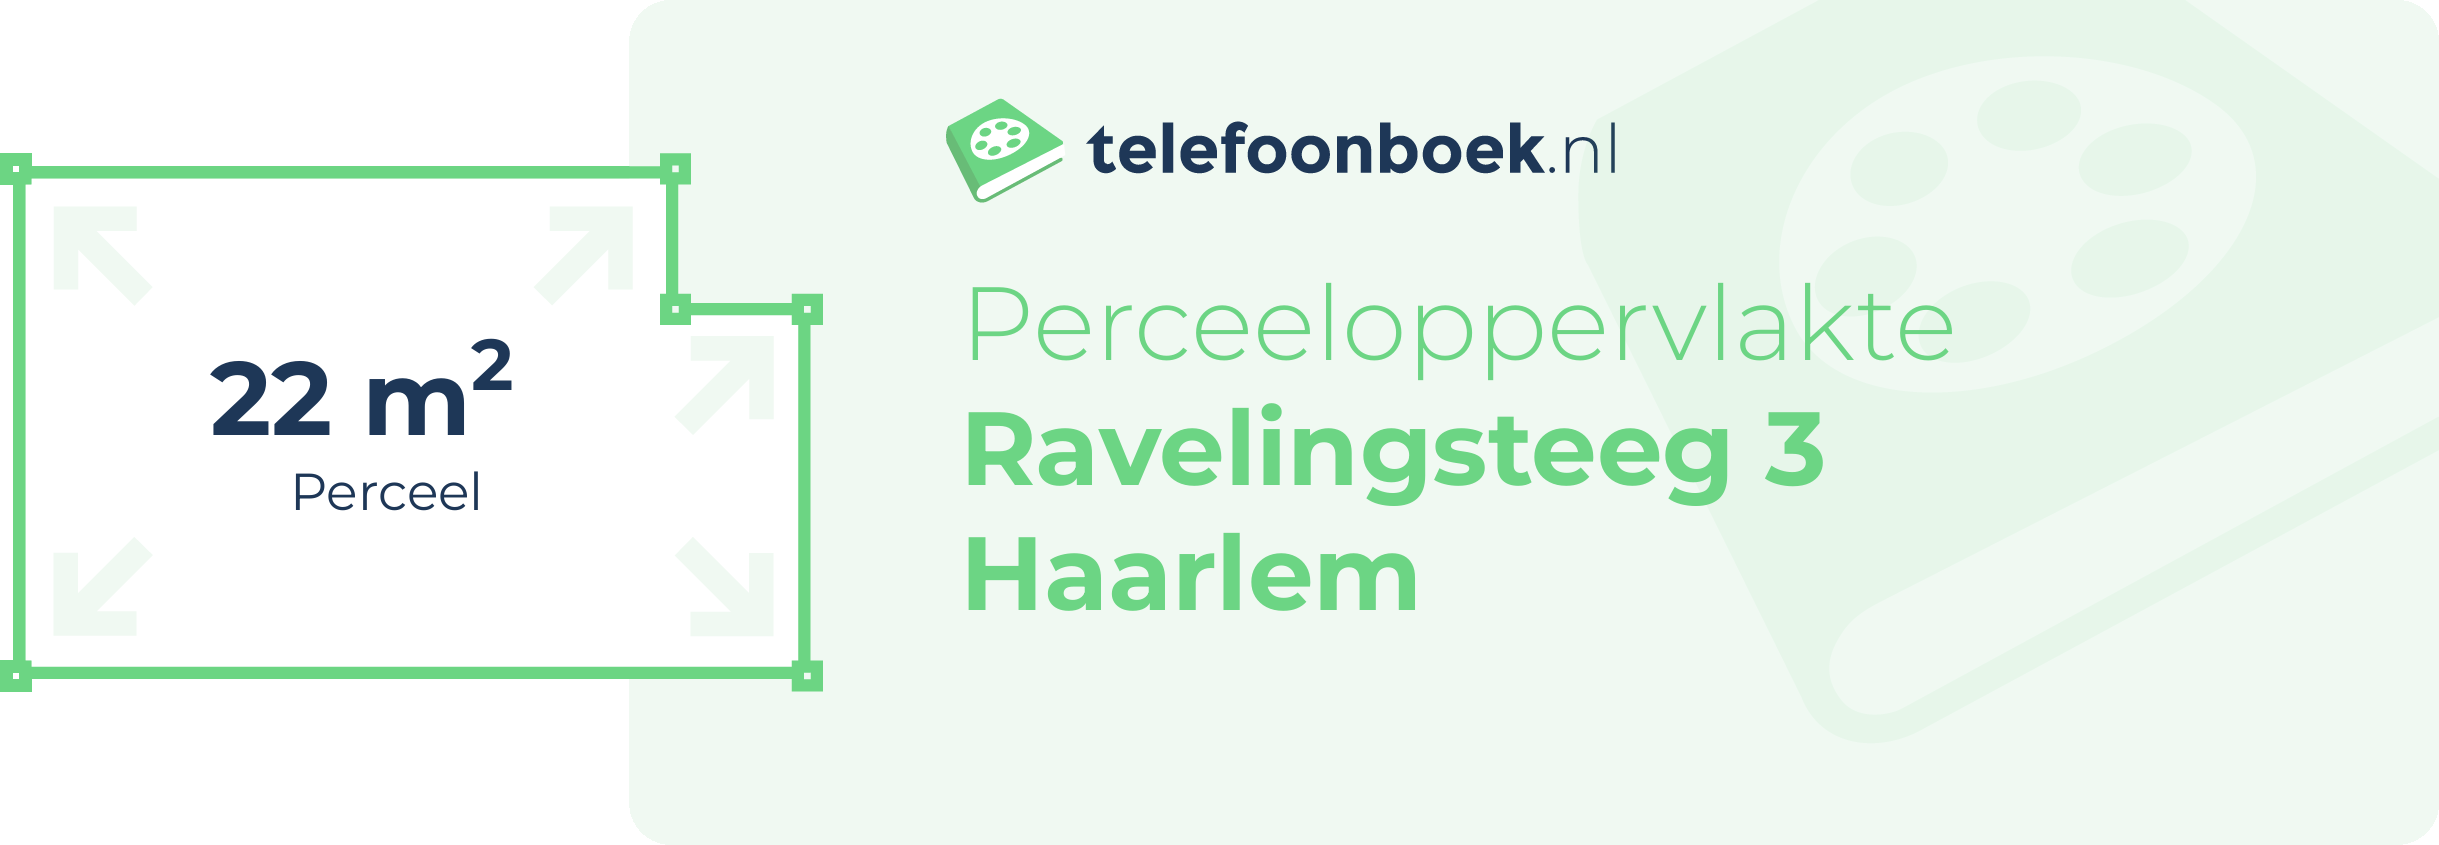 Perceeloppervlakte Ravelingsteeg 3 Haarlem